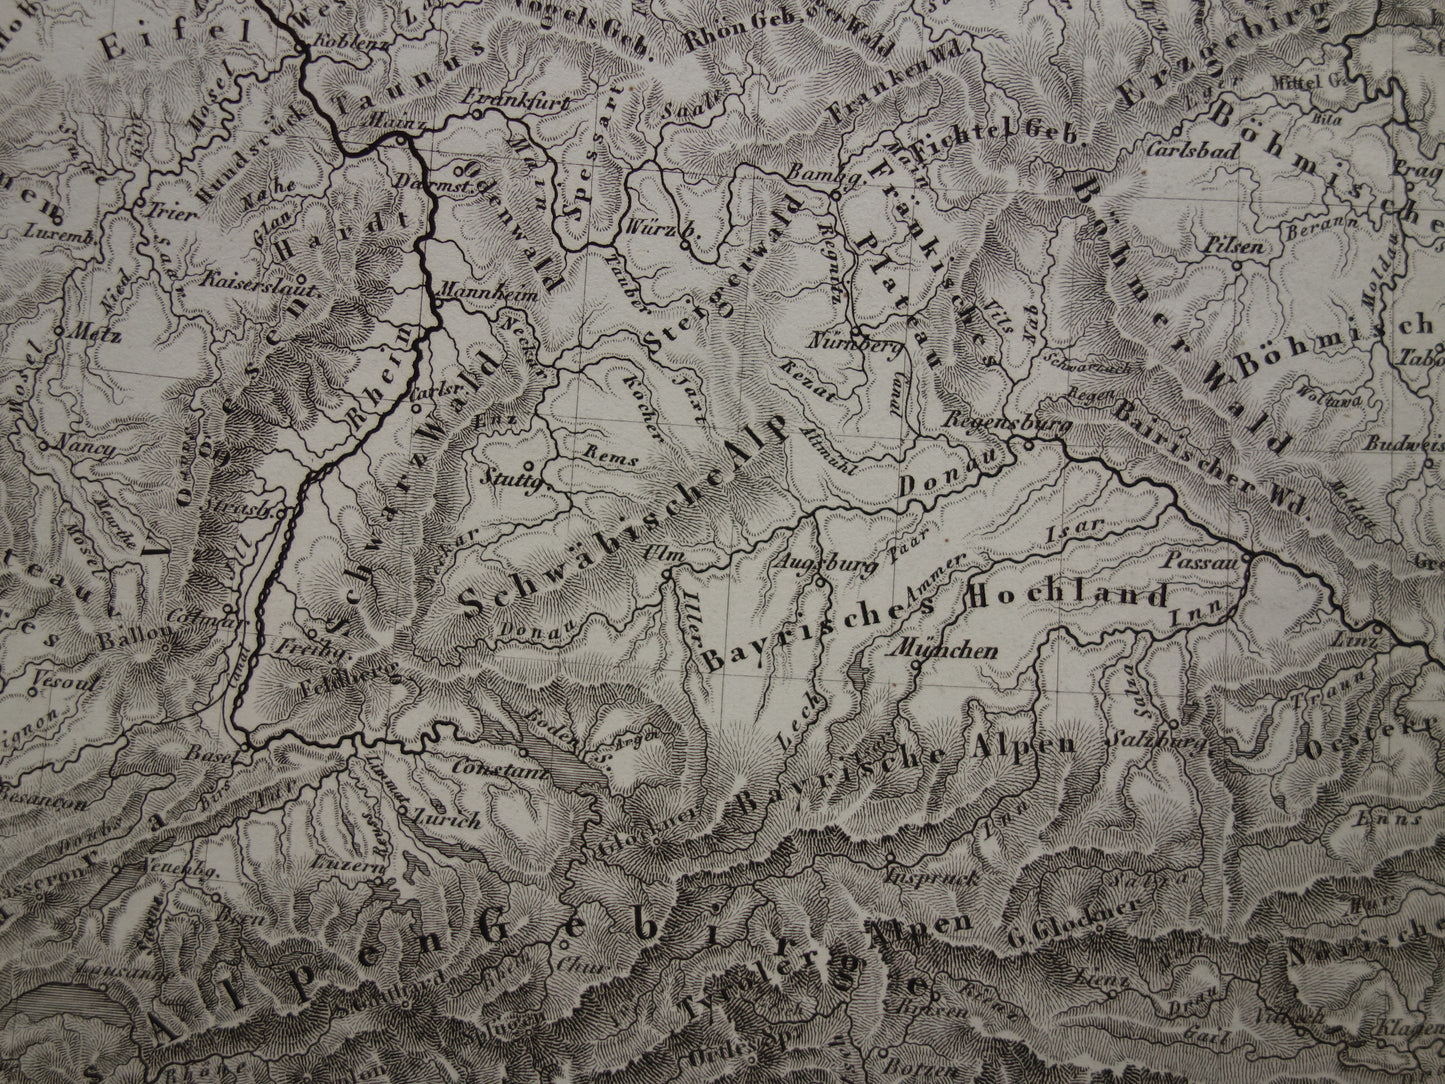 MIDDEN-EUROPA oude landkaart van rivieren en gebergten uit 1849 originele vintage historische kaarten Duitsland Oostenrijk Zwitserland Alpen bergen hoogtekaart